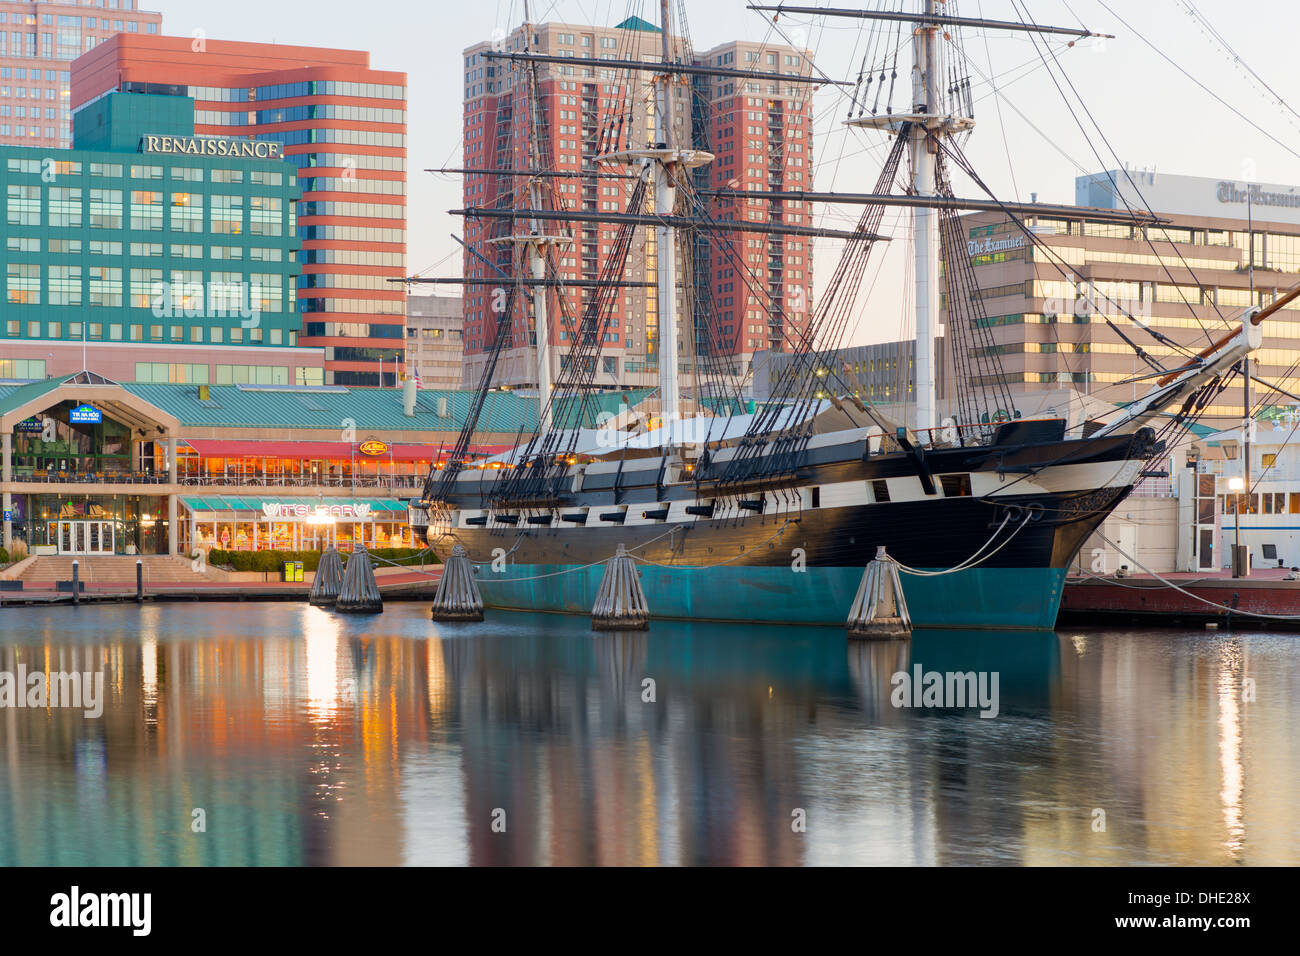 Historique de la corvette de guerre USS Constellation ancrée dans le port intérieur de Baltimore, Maryland. Banque D'Images